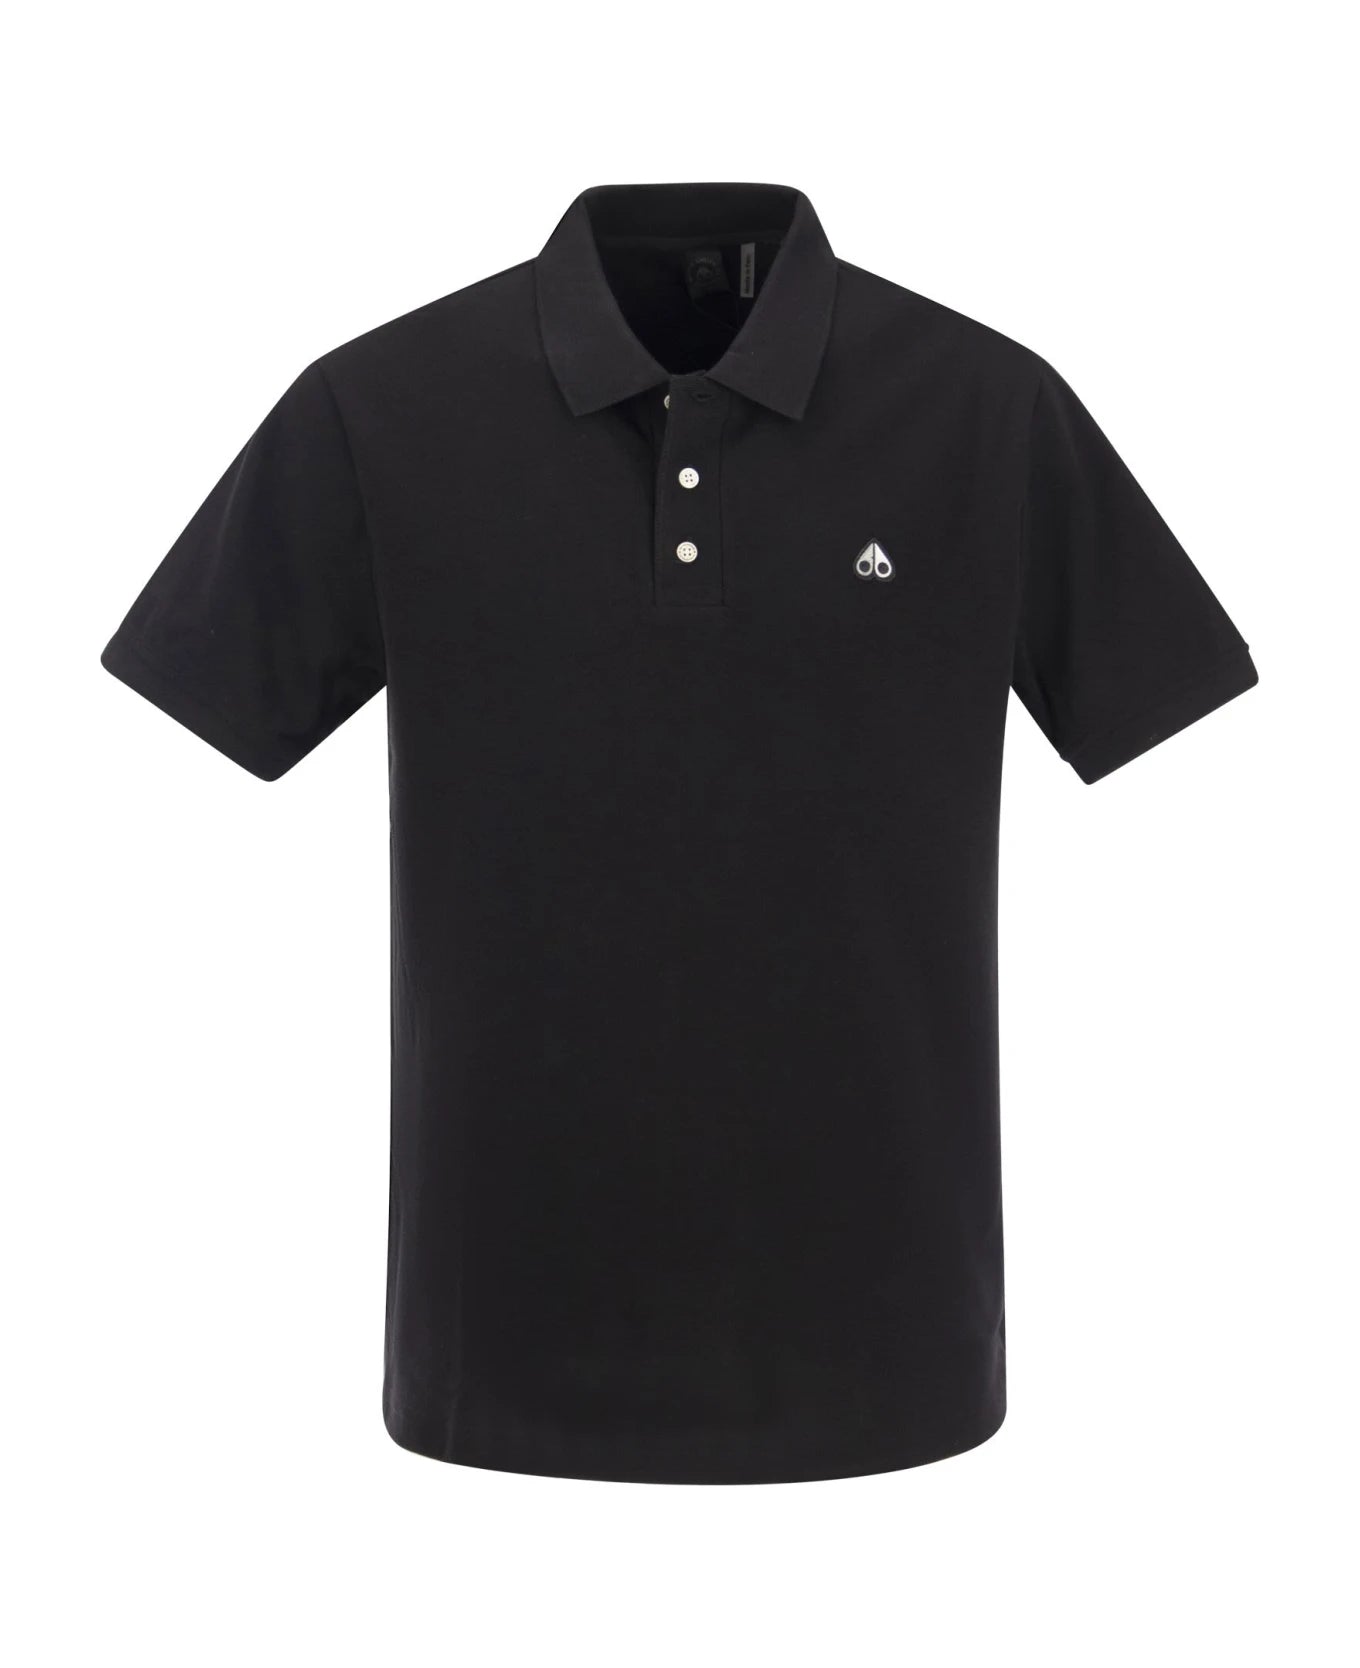 Men's Moose Knuckles Silver Logo Polo Shirt - Black